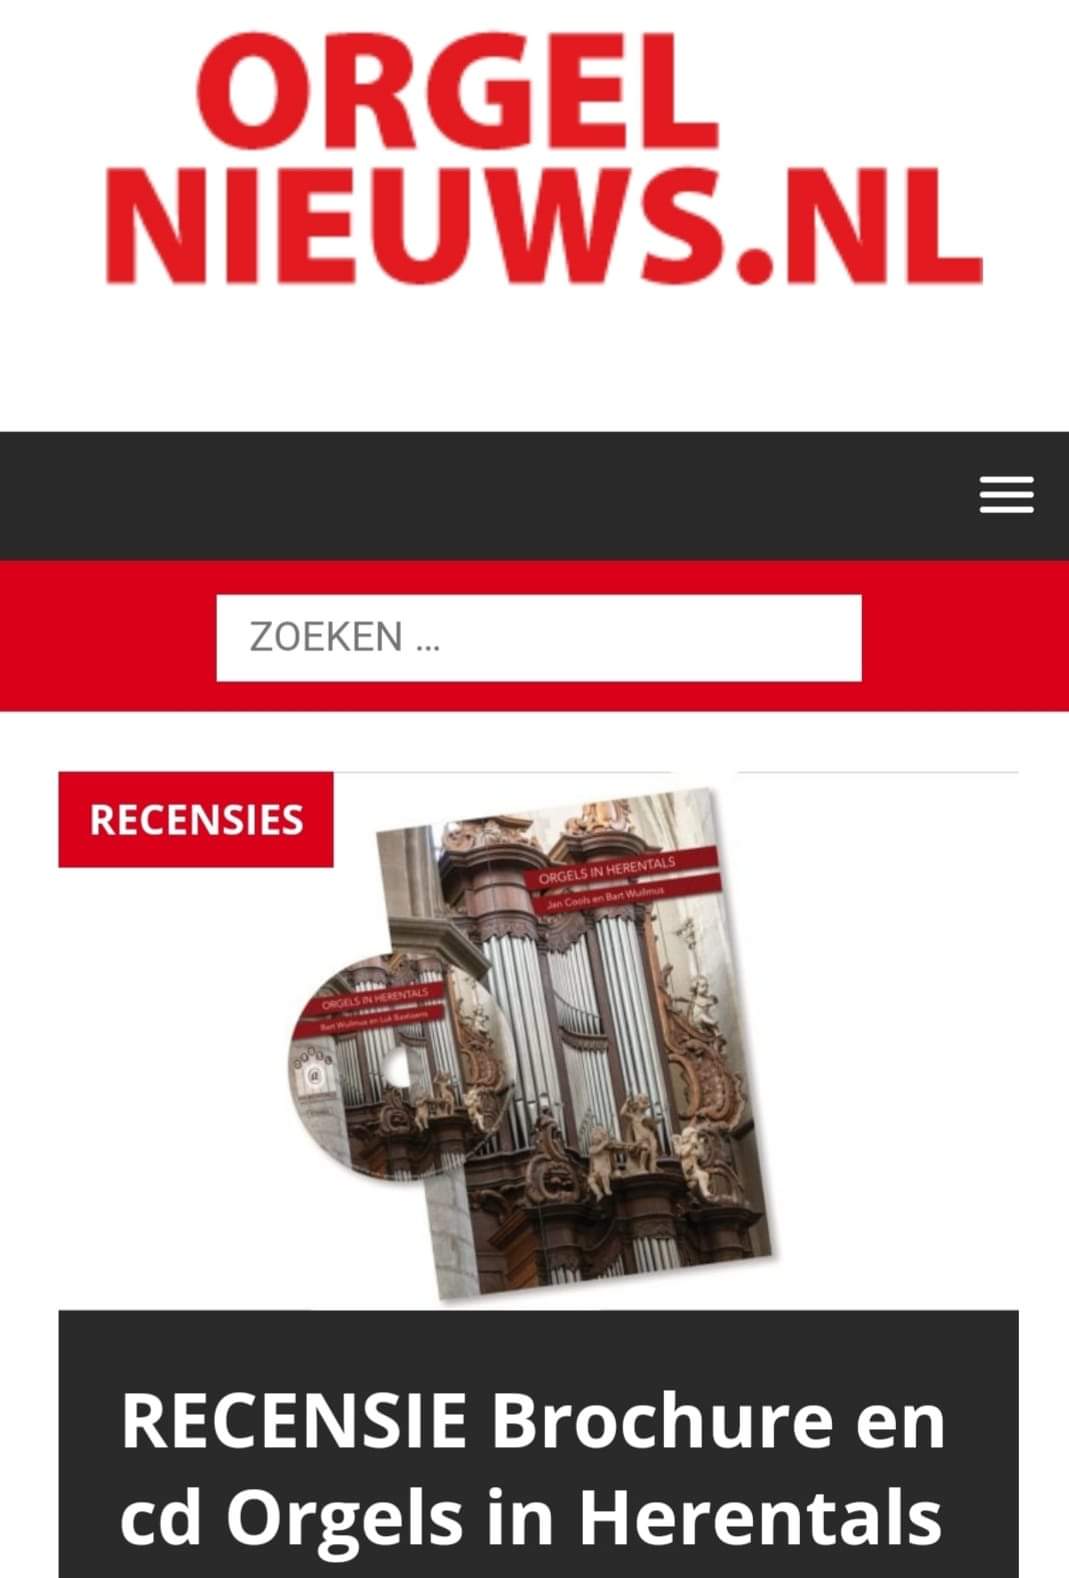 Orgelnieuws.nl